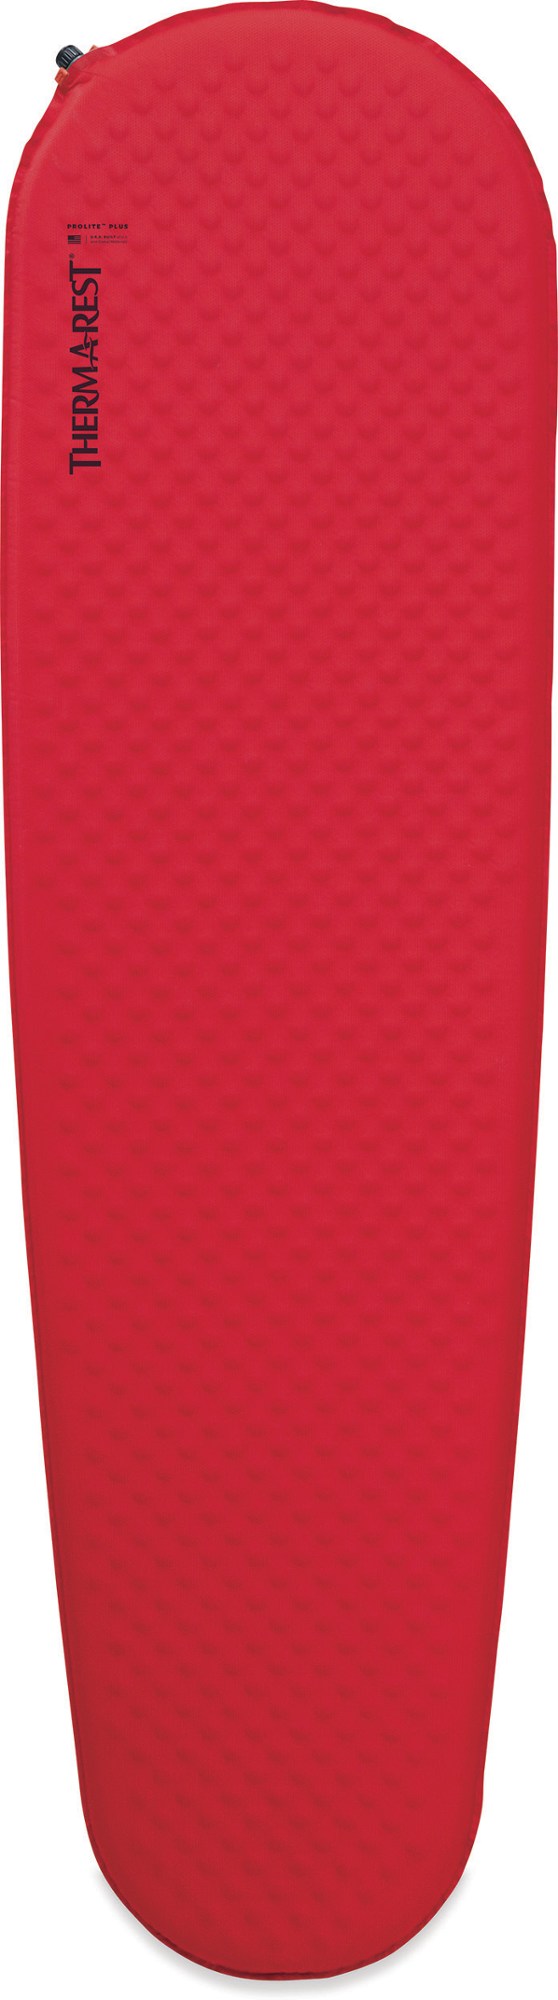 Спальный коврик ProLite Plus Therm-a-Rest, красный спальный коврик prolite apex therm a rest цвет heat wave